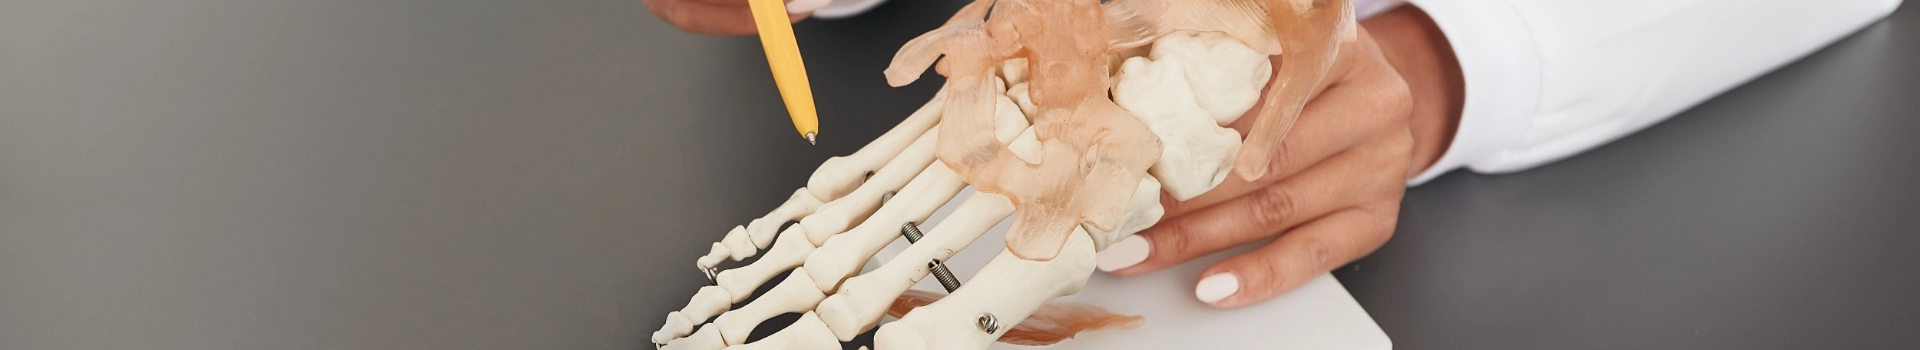 makieta szkieletu kości dłoni - banner